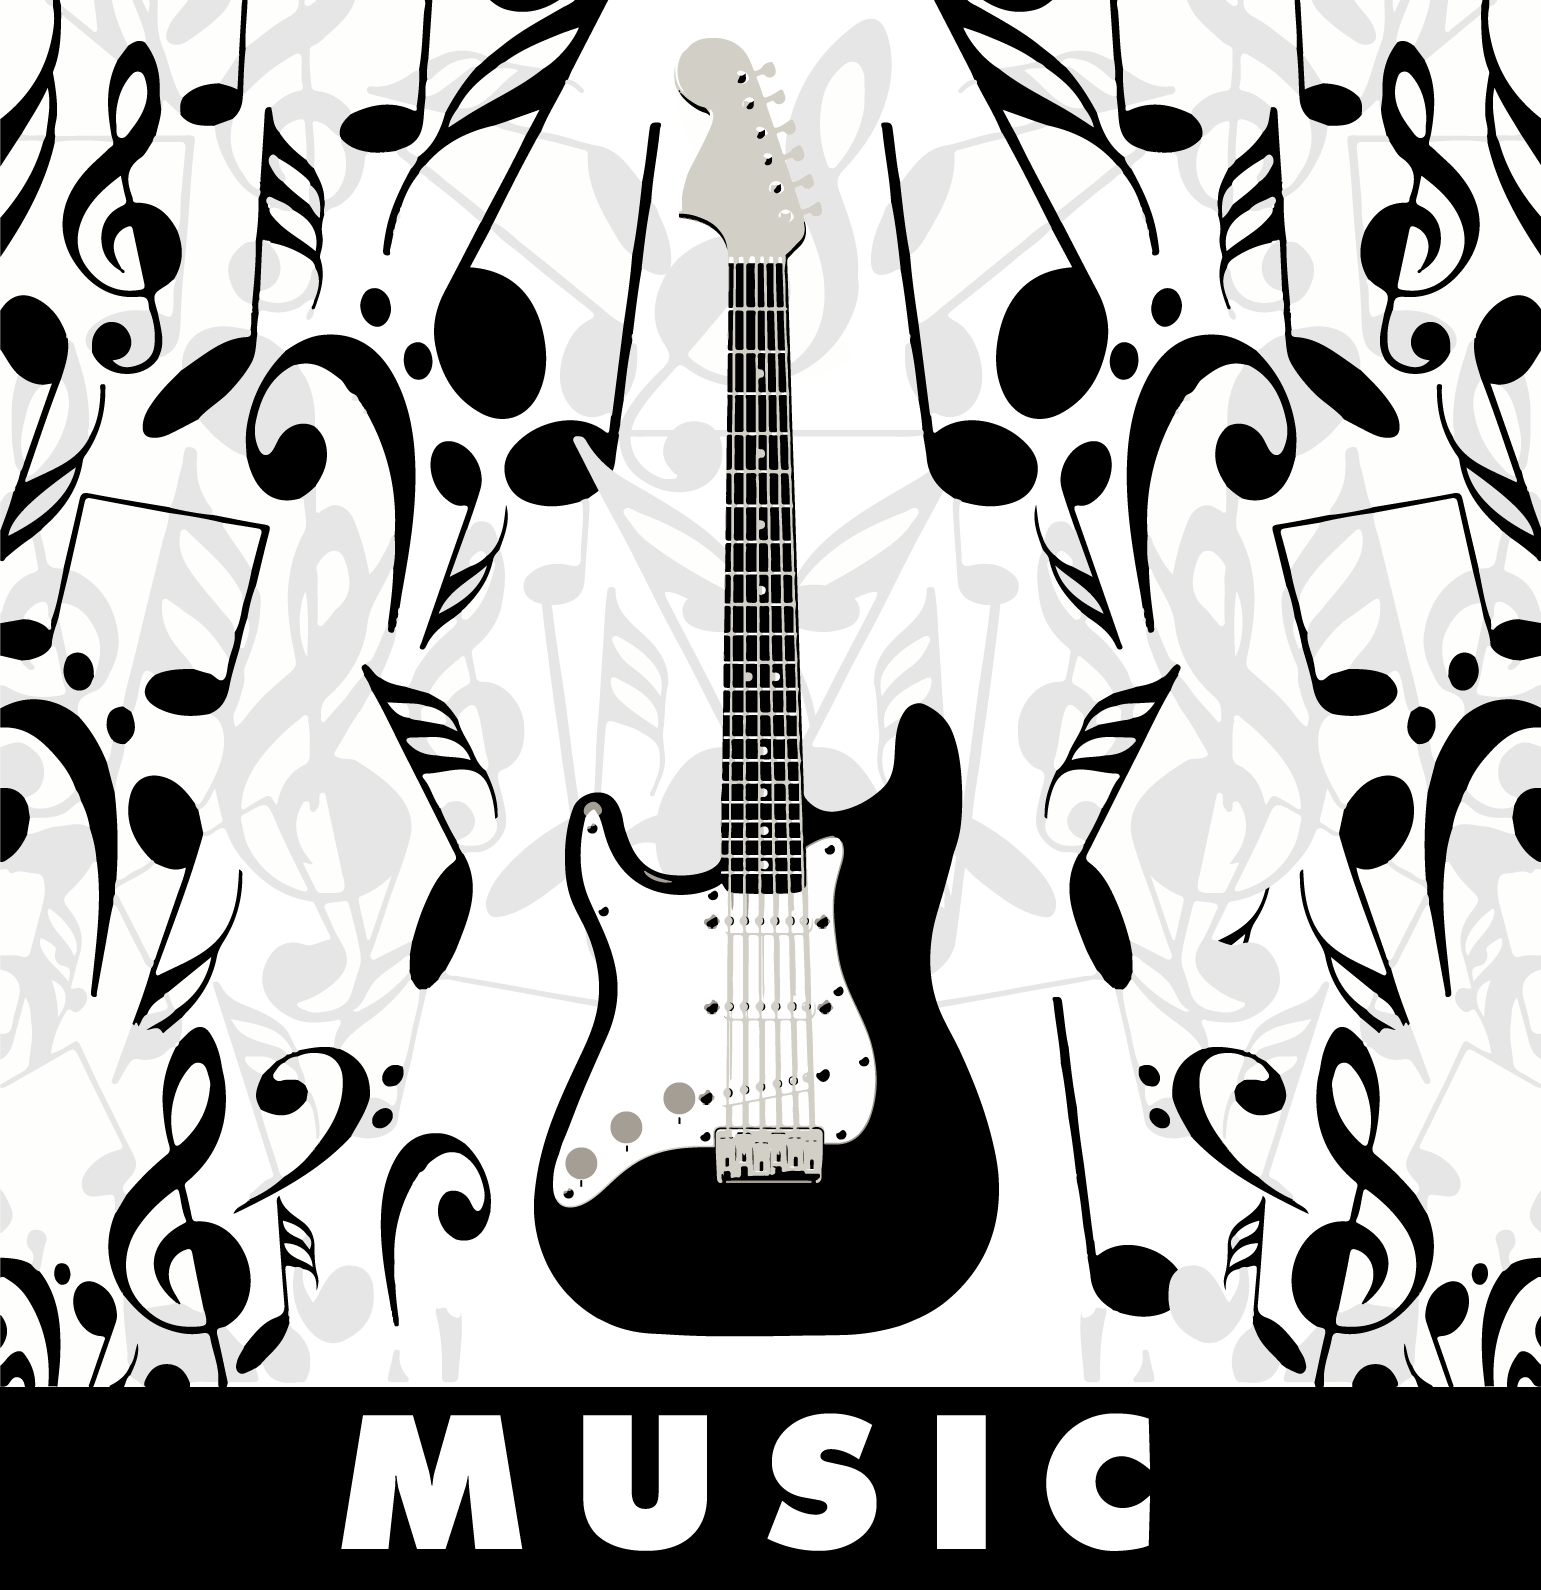 Ilustración gratis - Ilustración de una guitarra con notas musicales